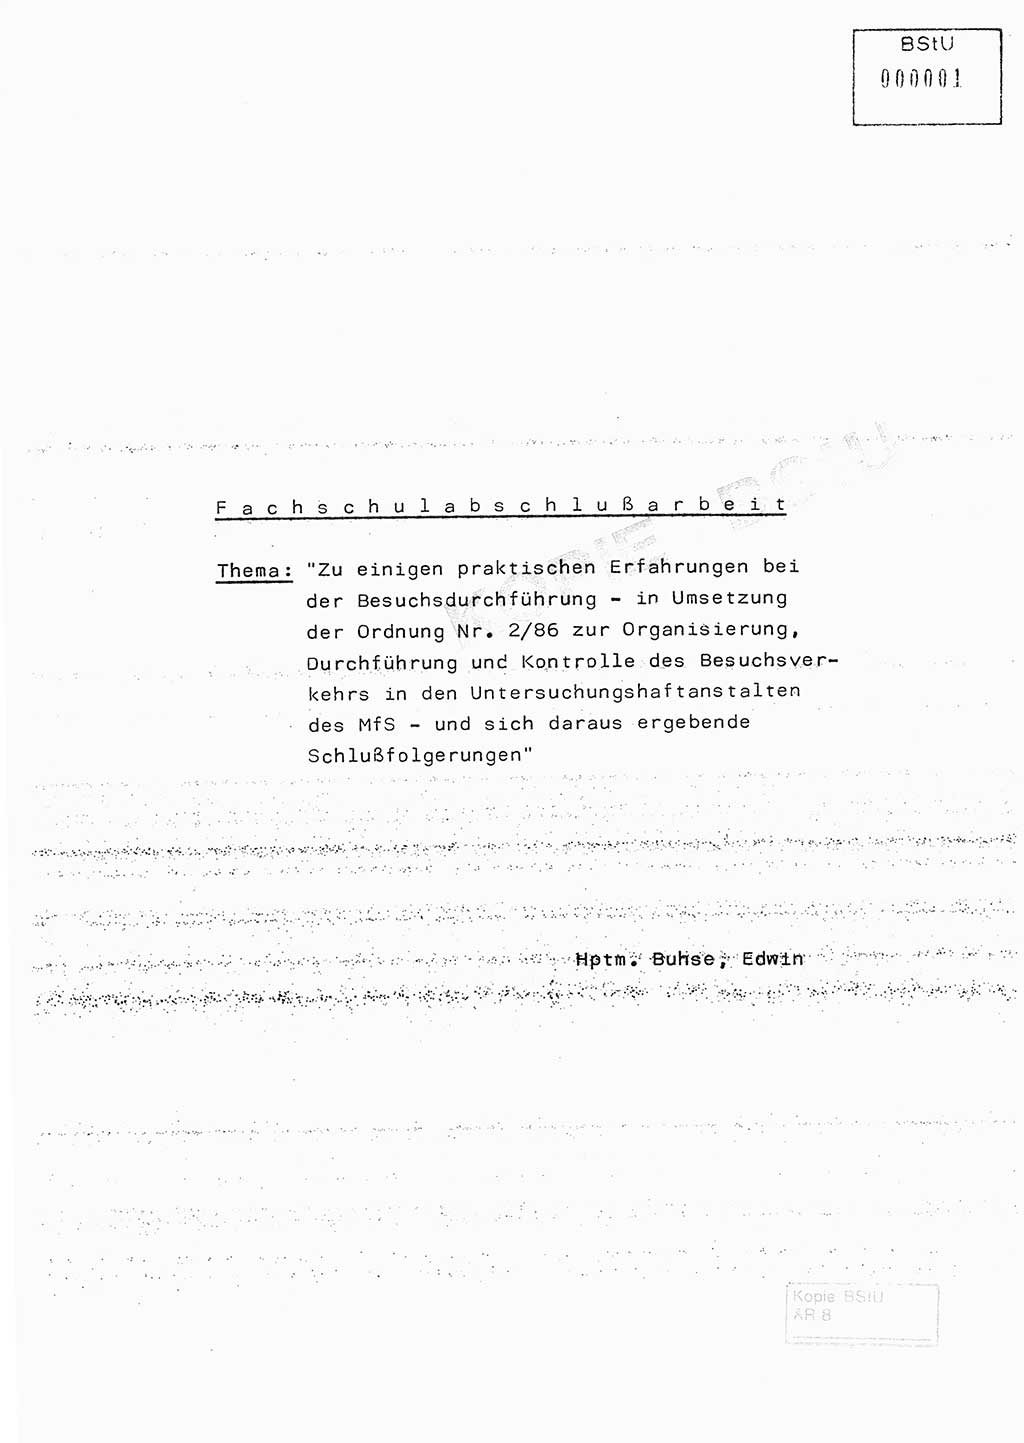 Fachschulabschlußarbeit Hauptmann Edwin Buhse (Abt. ⅩⅣ), Ministerium für Staatssicherheit (MfS) [Deutsche Demokratische Republik (DDR)], Abteilung ⅩⅣ, o.D., o.O, o.J., ca. 1986 wg. Bez. DA 2/86, Seite 1 (FS-Abschl.-Arb. MfS DDR Abt. ⅩⅣ 1986, S. 1)